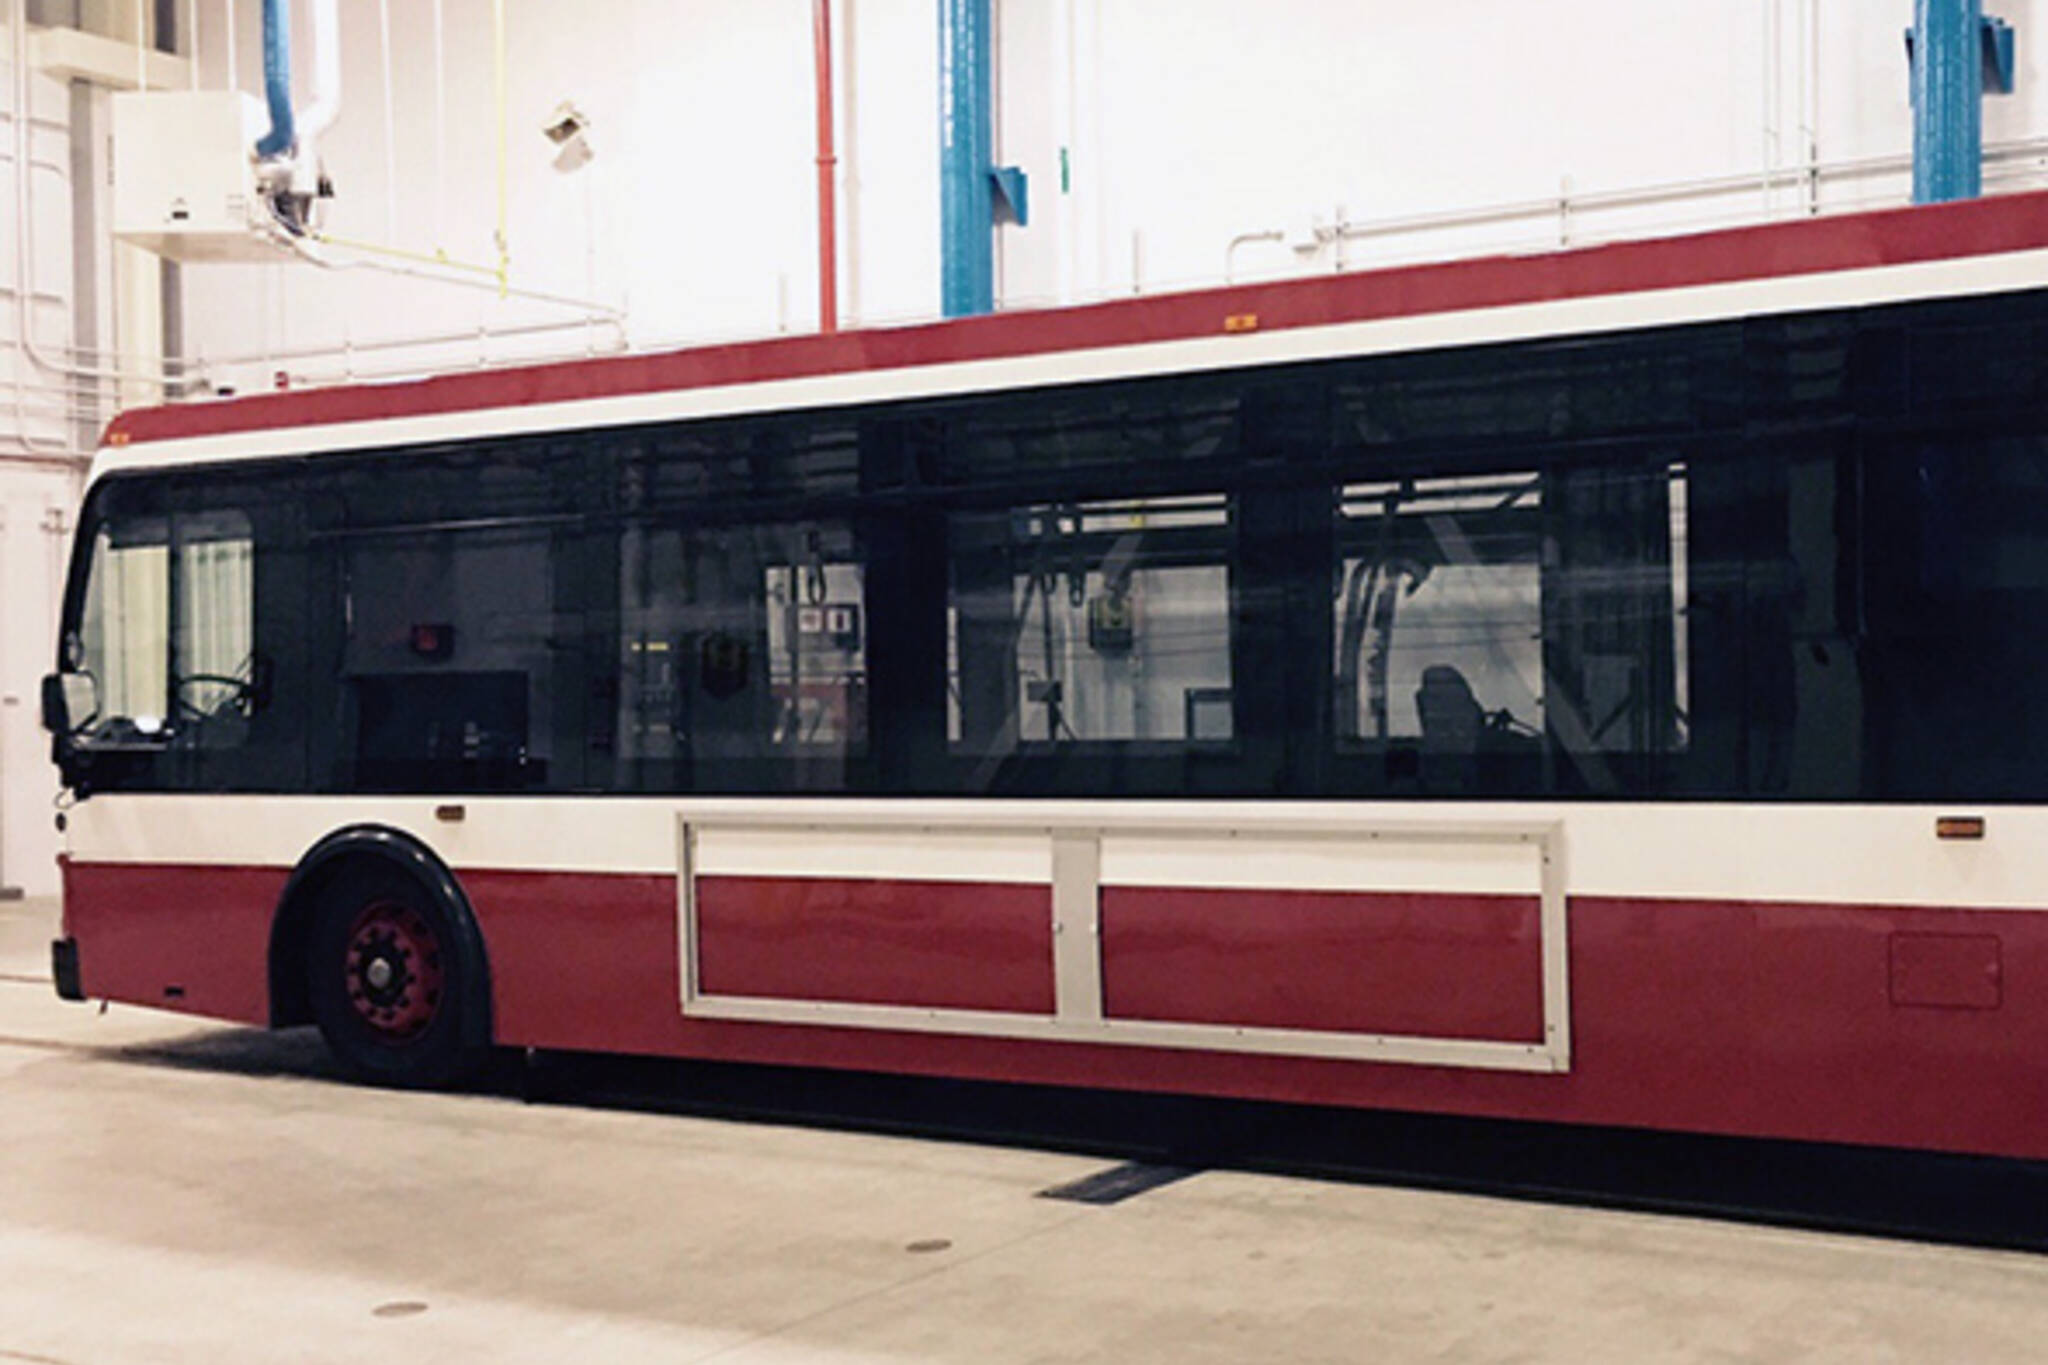 new TTC bus design